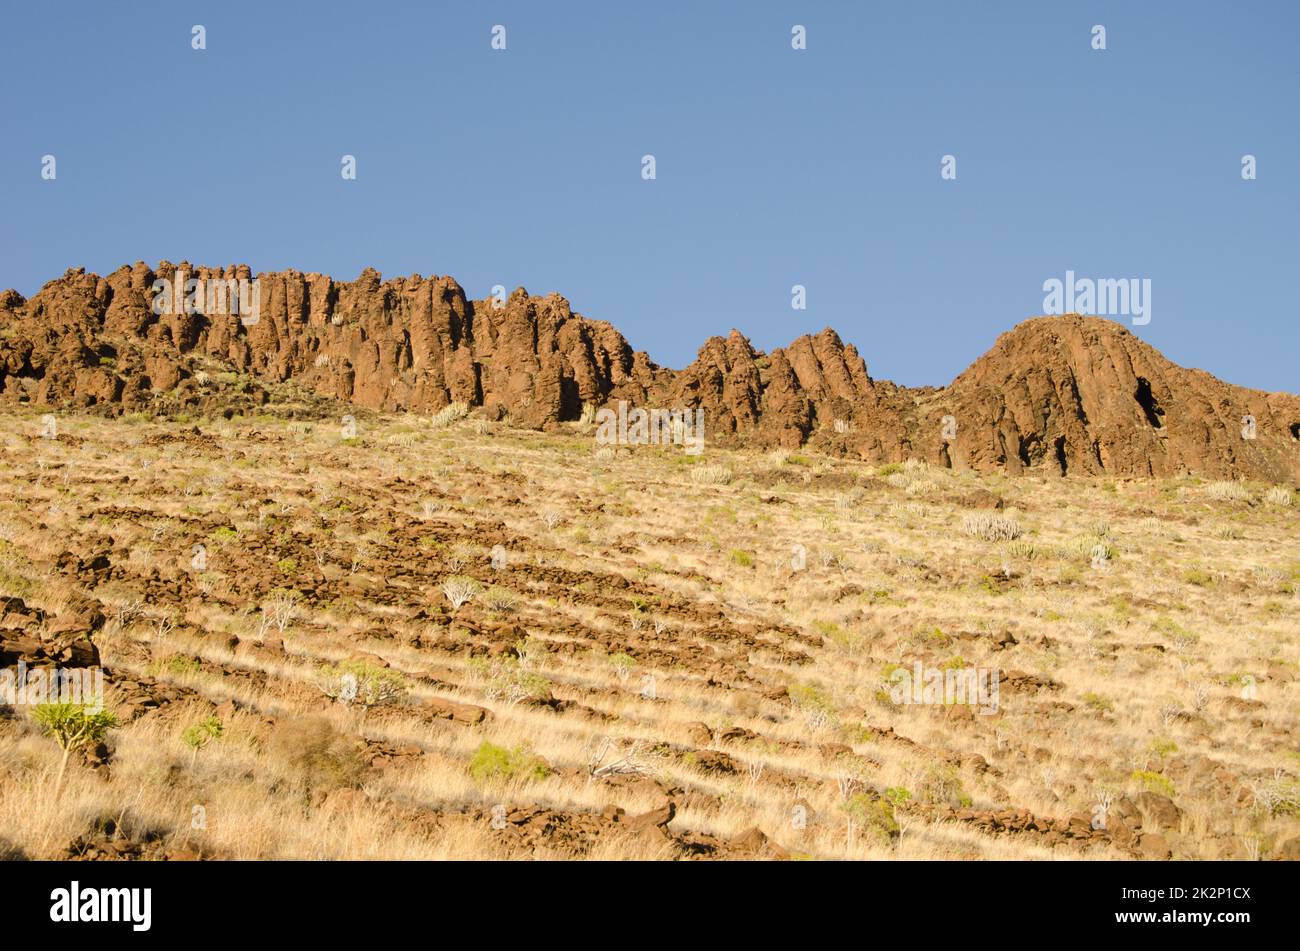 Acantilado rocoso en una ladera. Foto de stock